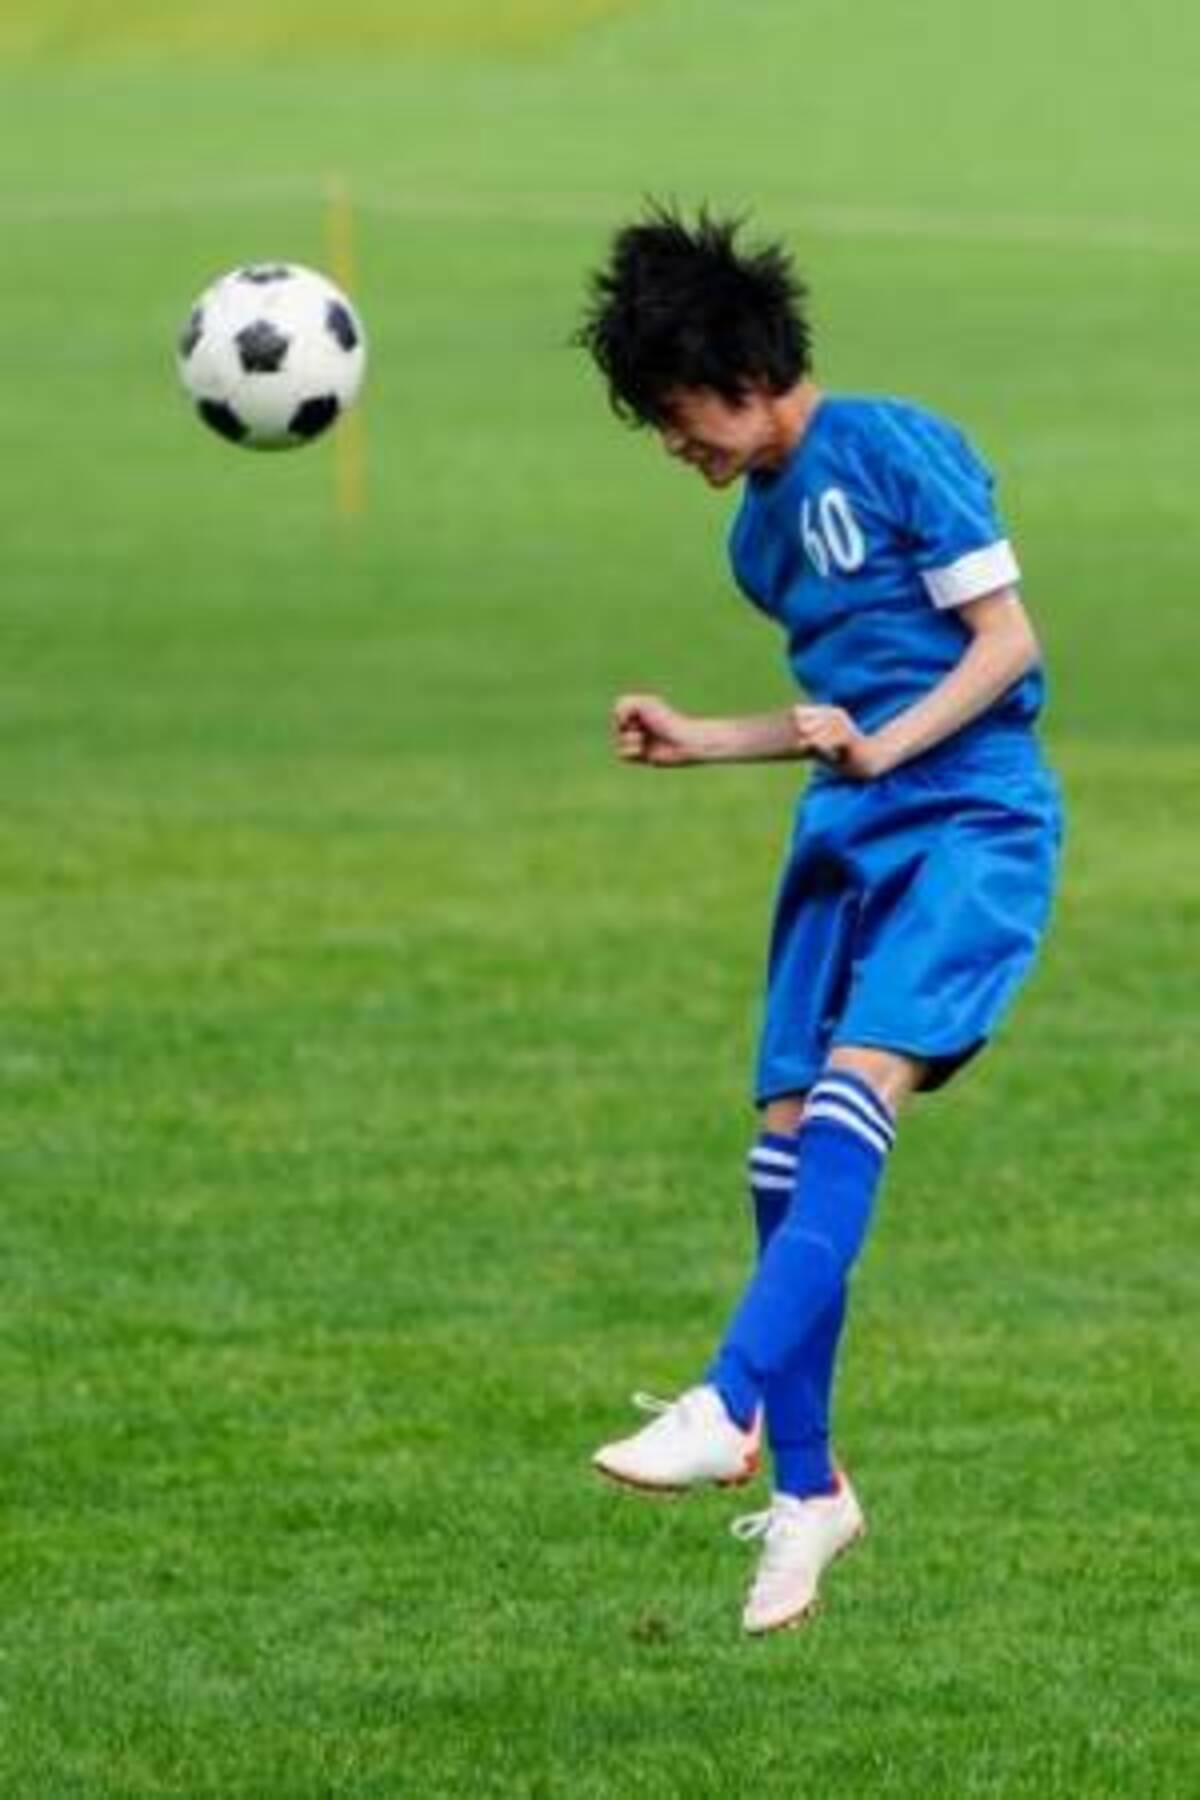 ジュニア年代のヘディングの課題とは 日本サッカー 協会が発表した年代別ヘディング習得のためのガイドライン 5年生 中学生編 21年6月25日 ウーマンエキサイト 1 3